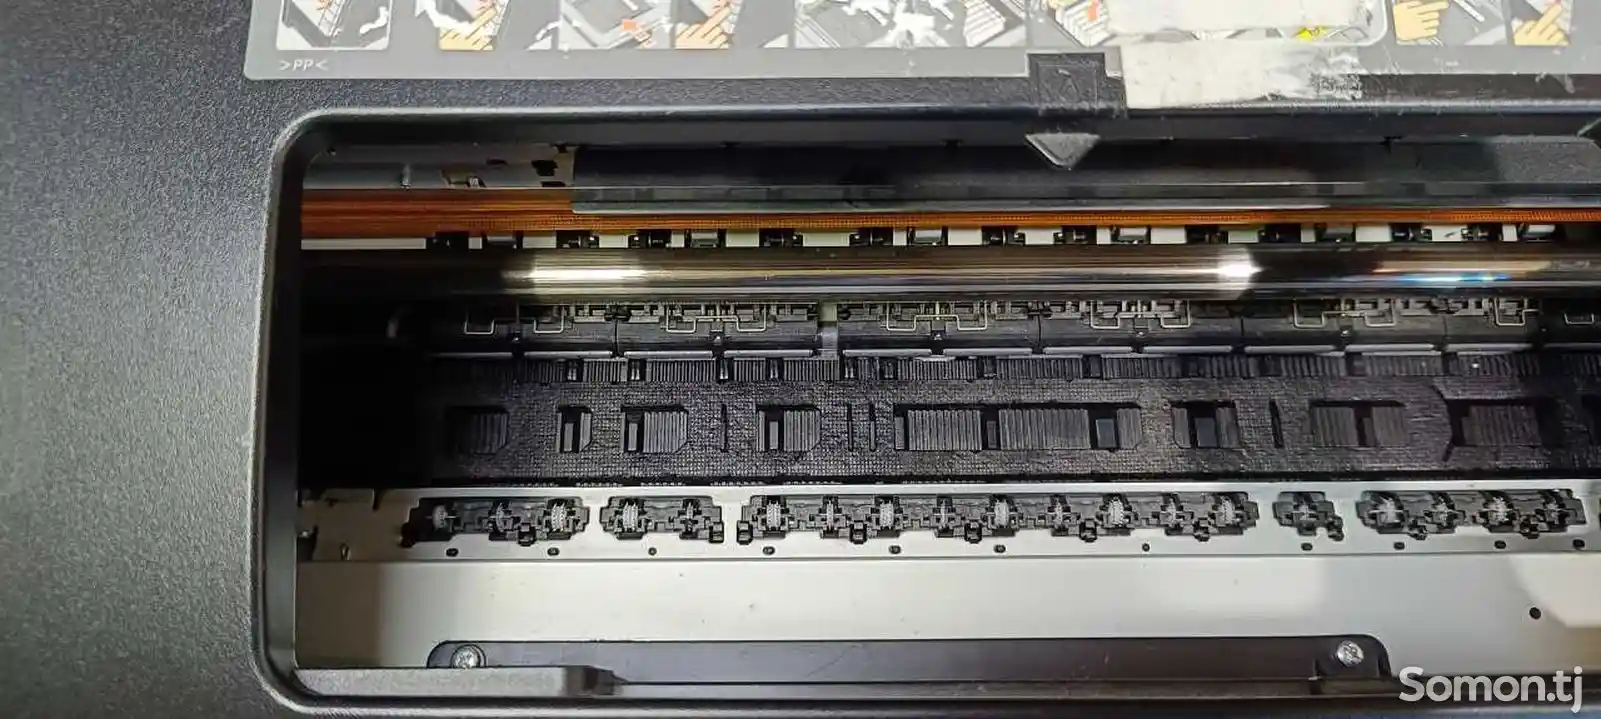 Принтер Epson A3 1410-6